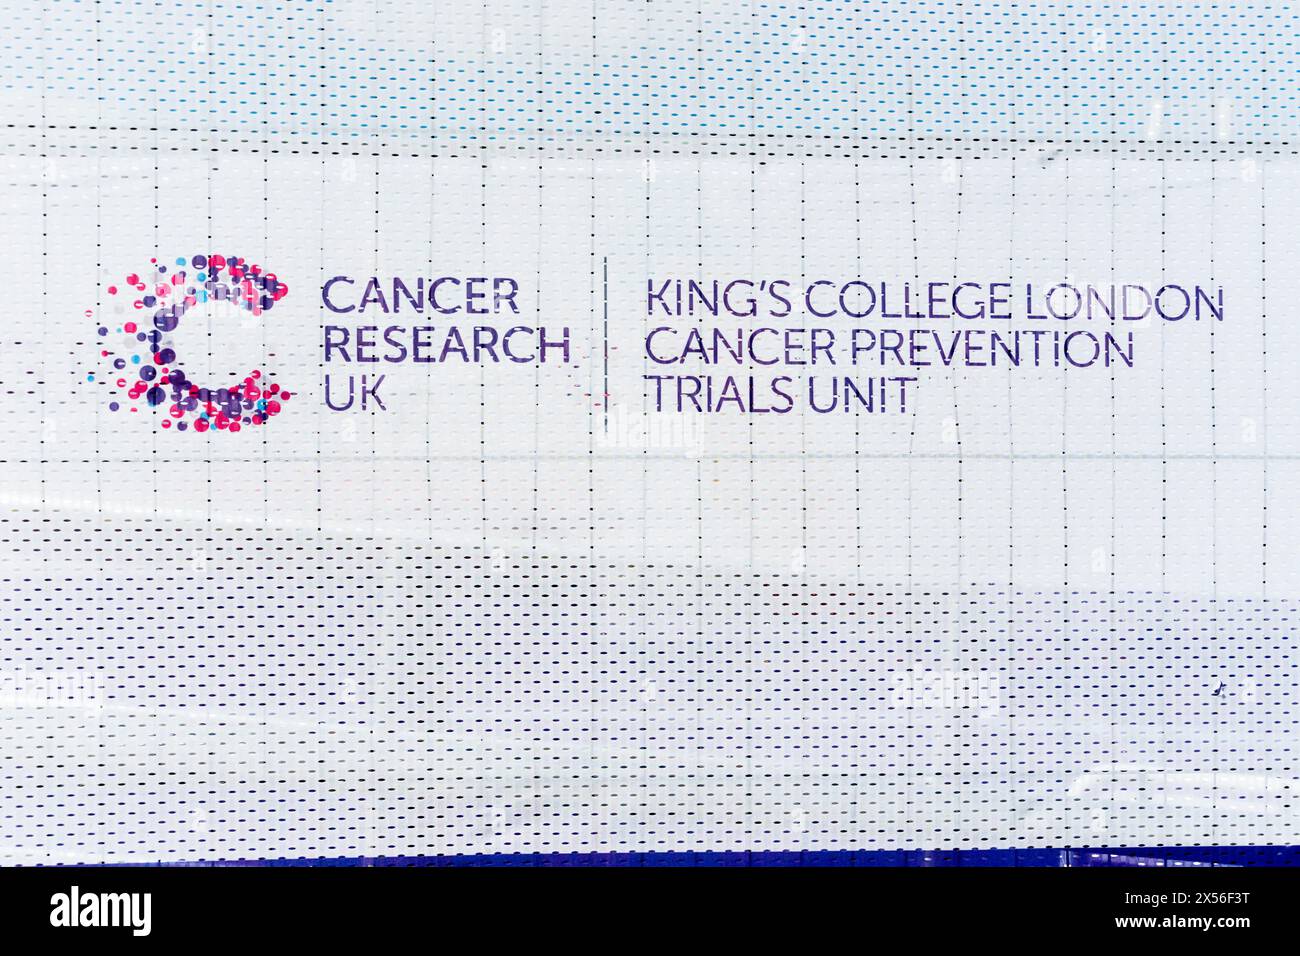 Krebsforschung UK & King's College London Cancer Prevention Trials Unit unterzeichnen eine Klinik für die NHS Galleri-Studie - neuer Bluttest zur Erkennung von Krebs. Stockfoto